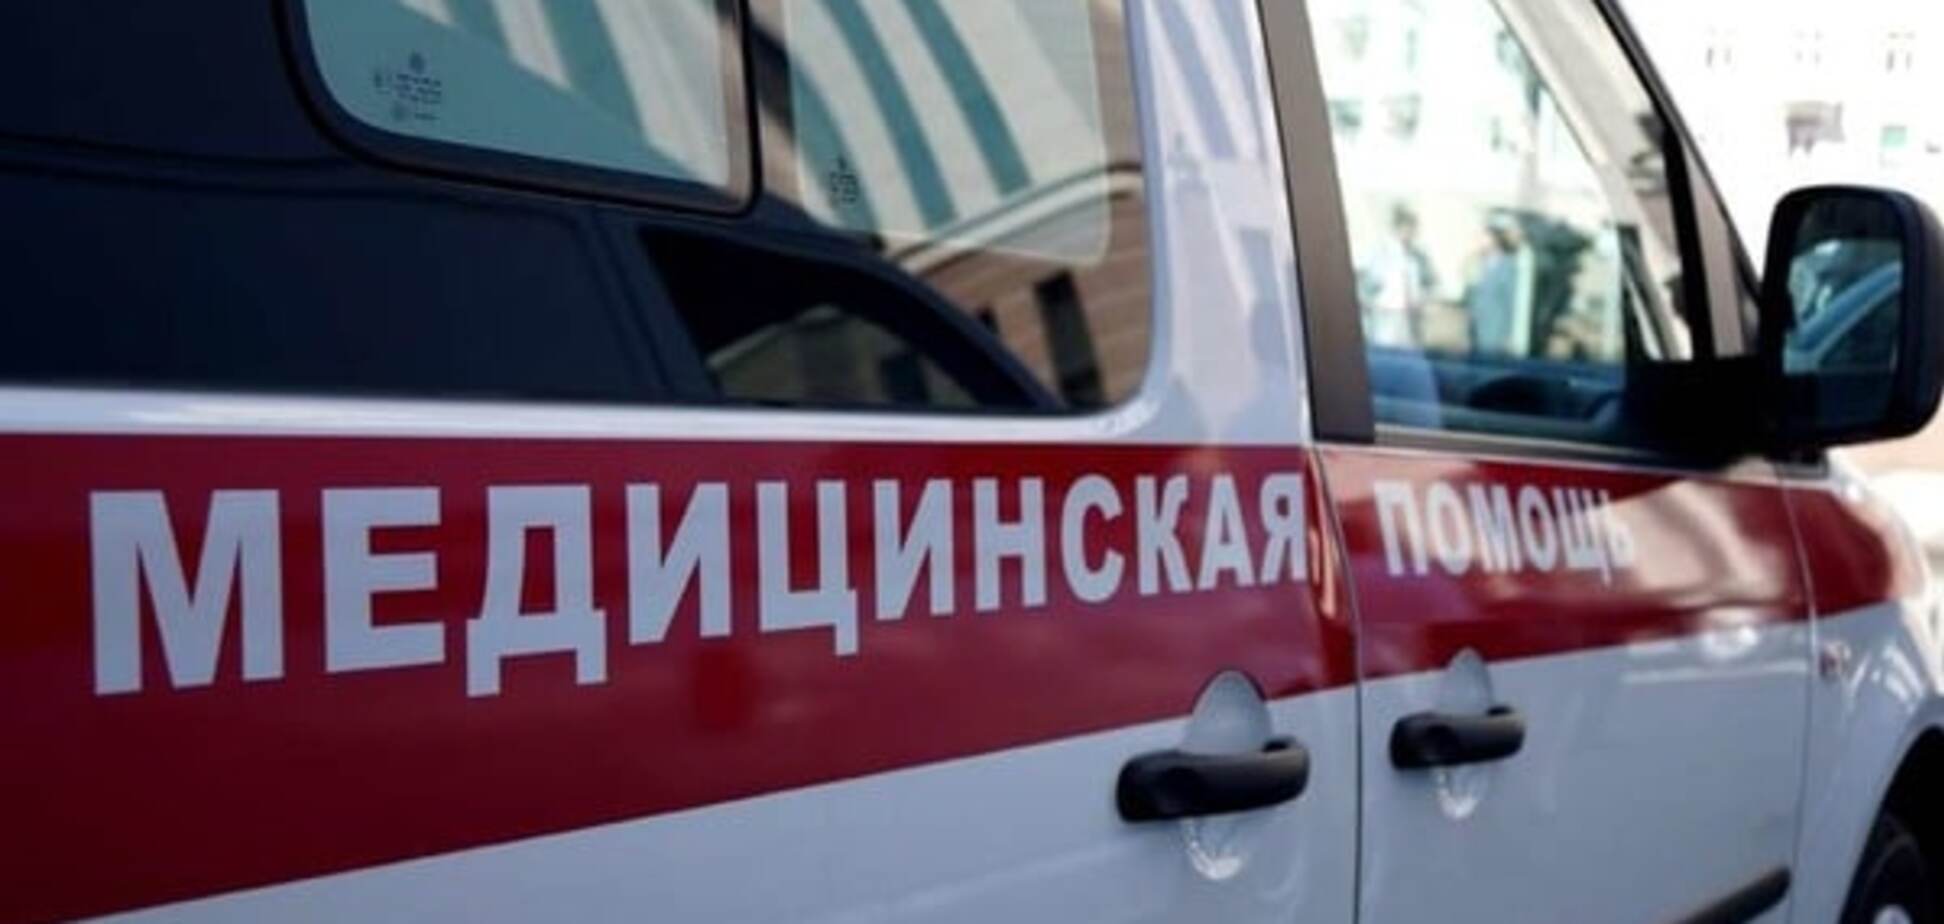 Українець постраждав у масштабній аварії в Росії